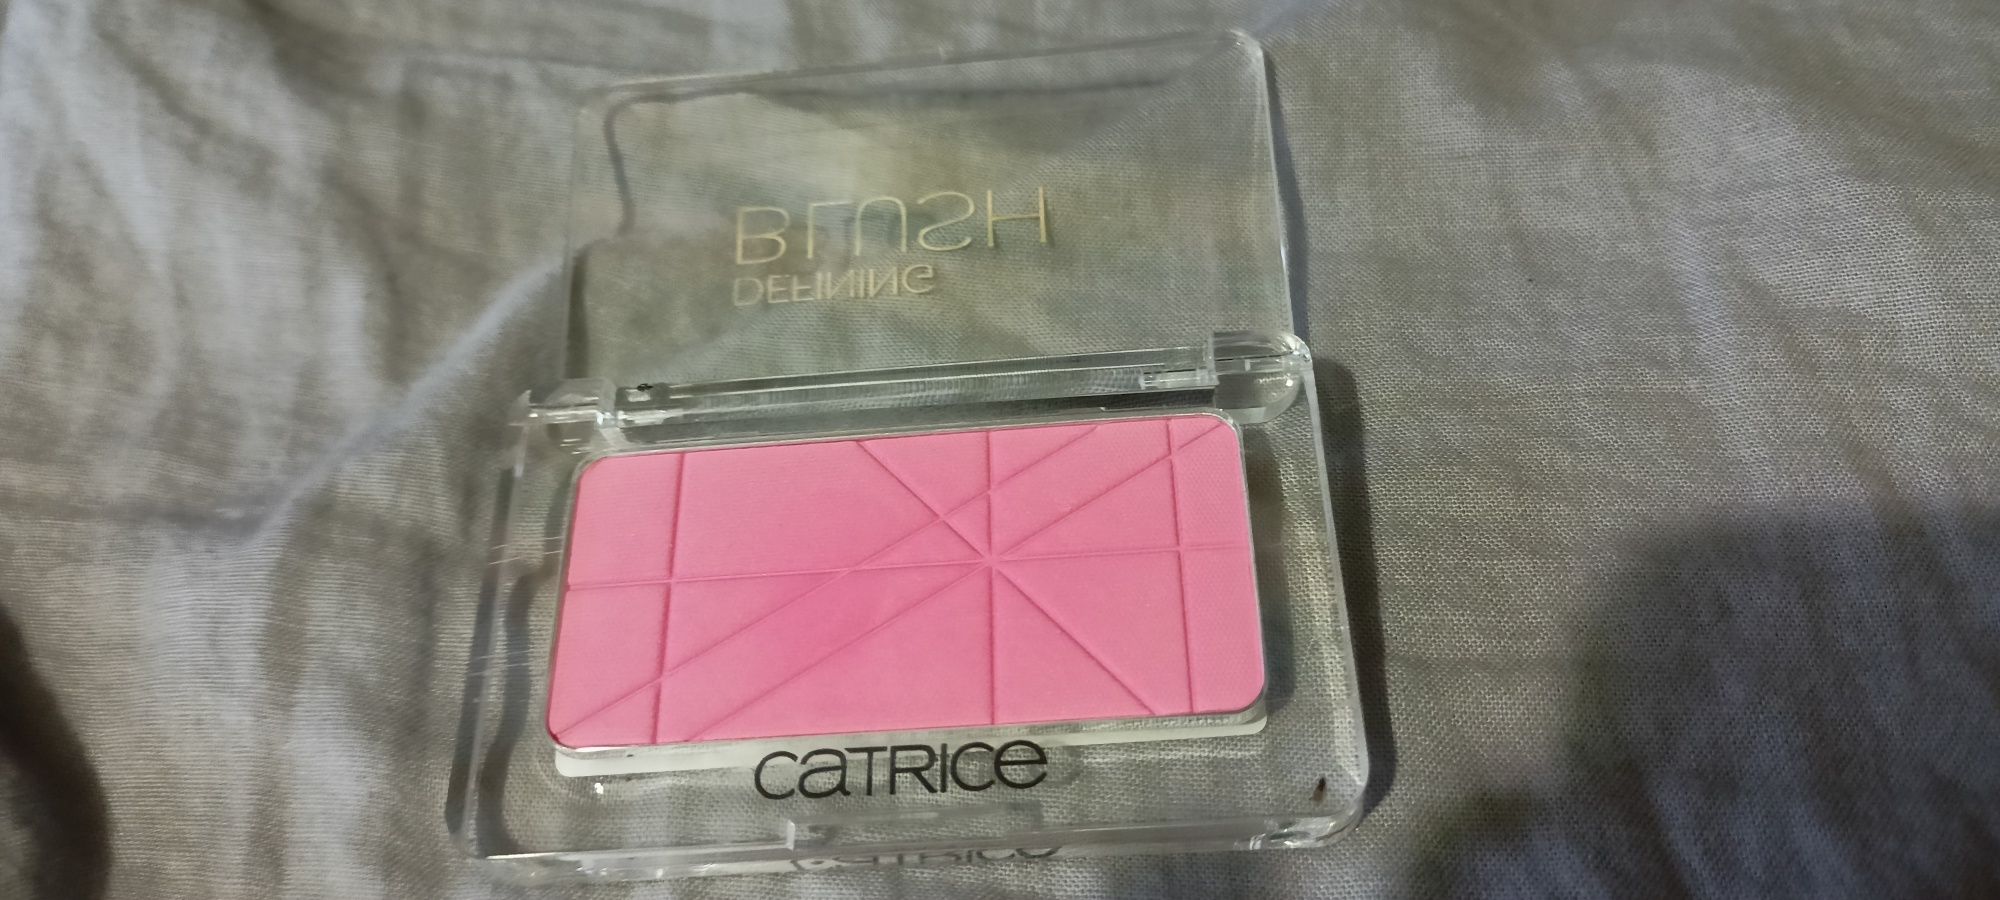 Catrice defining blush 070 pinkerbell